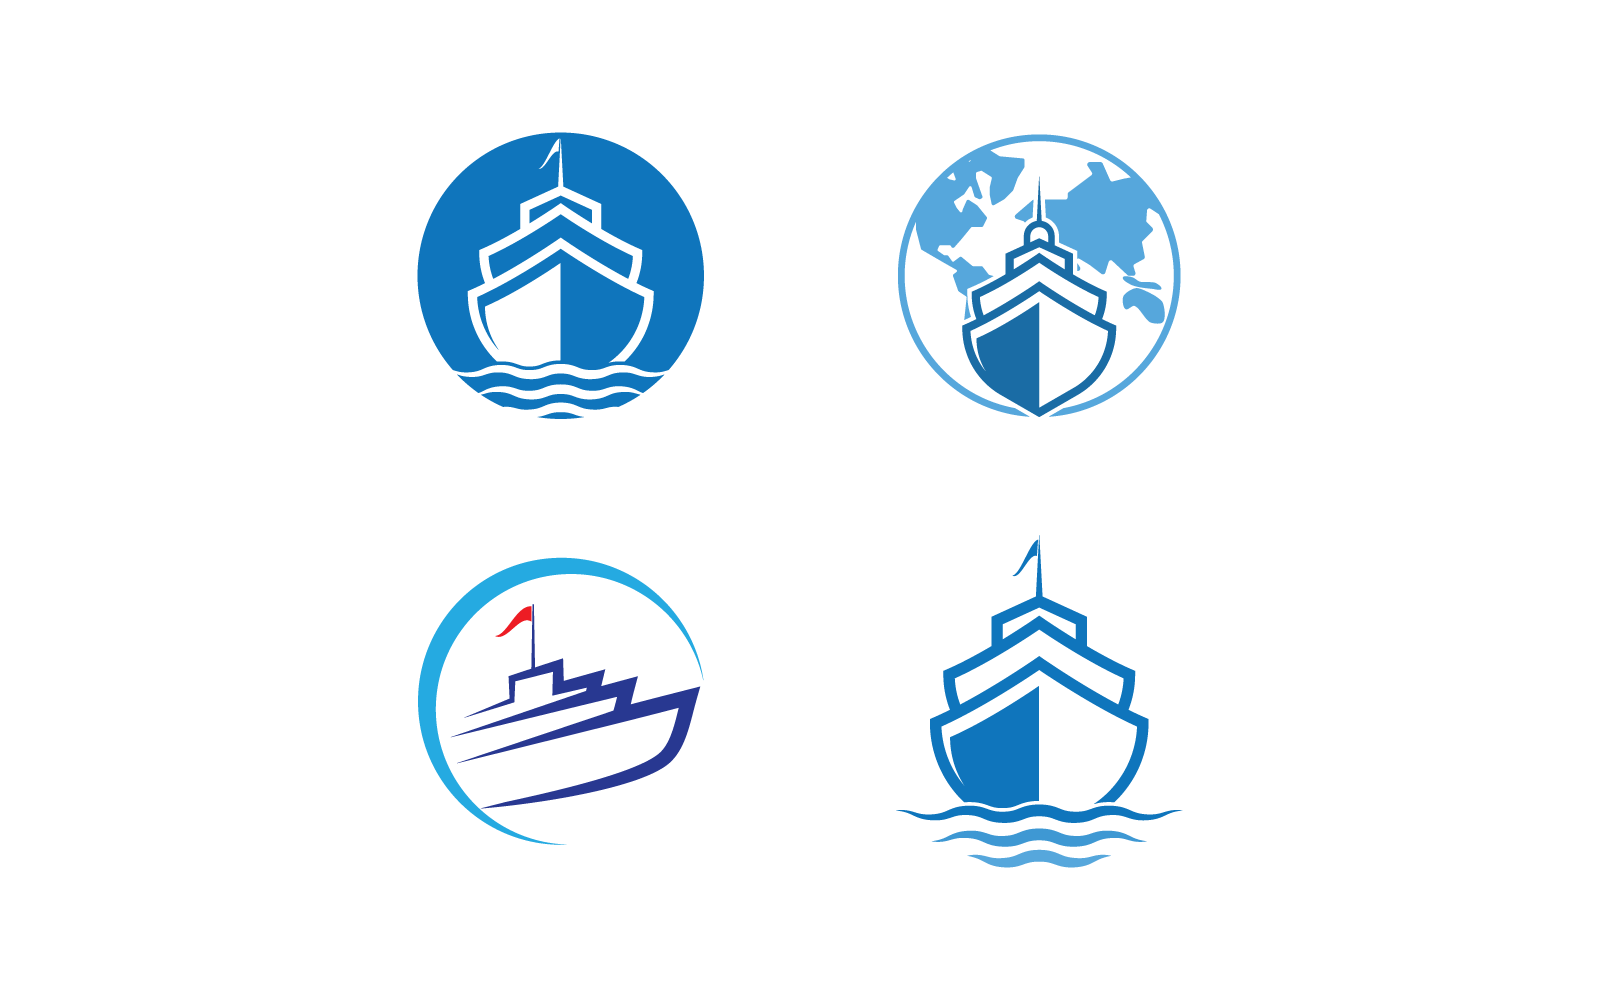 Cruise ship Logo  vector icon flat design